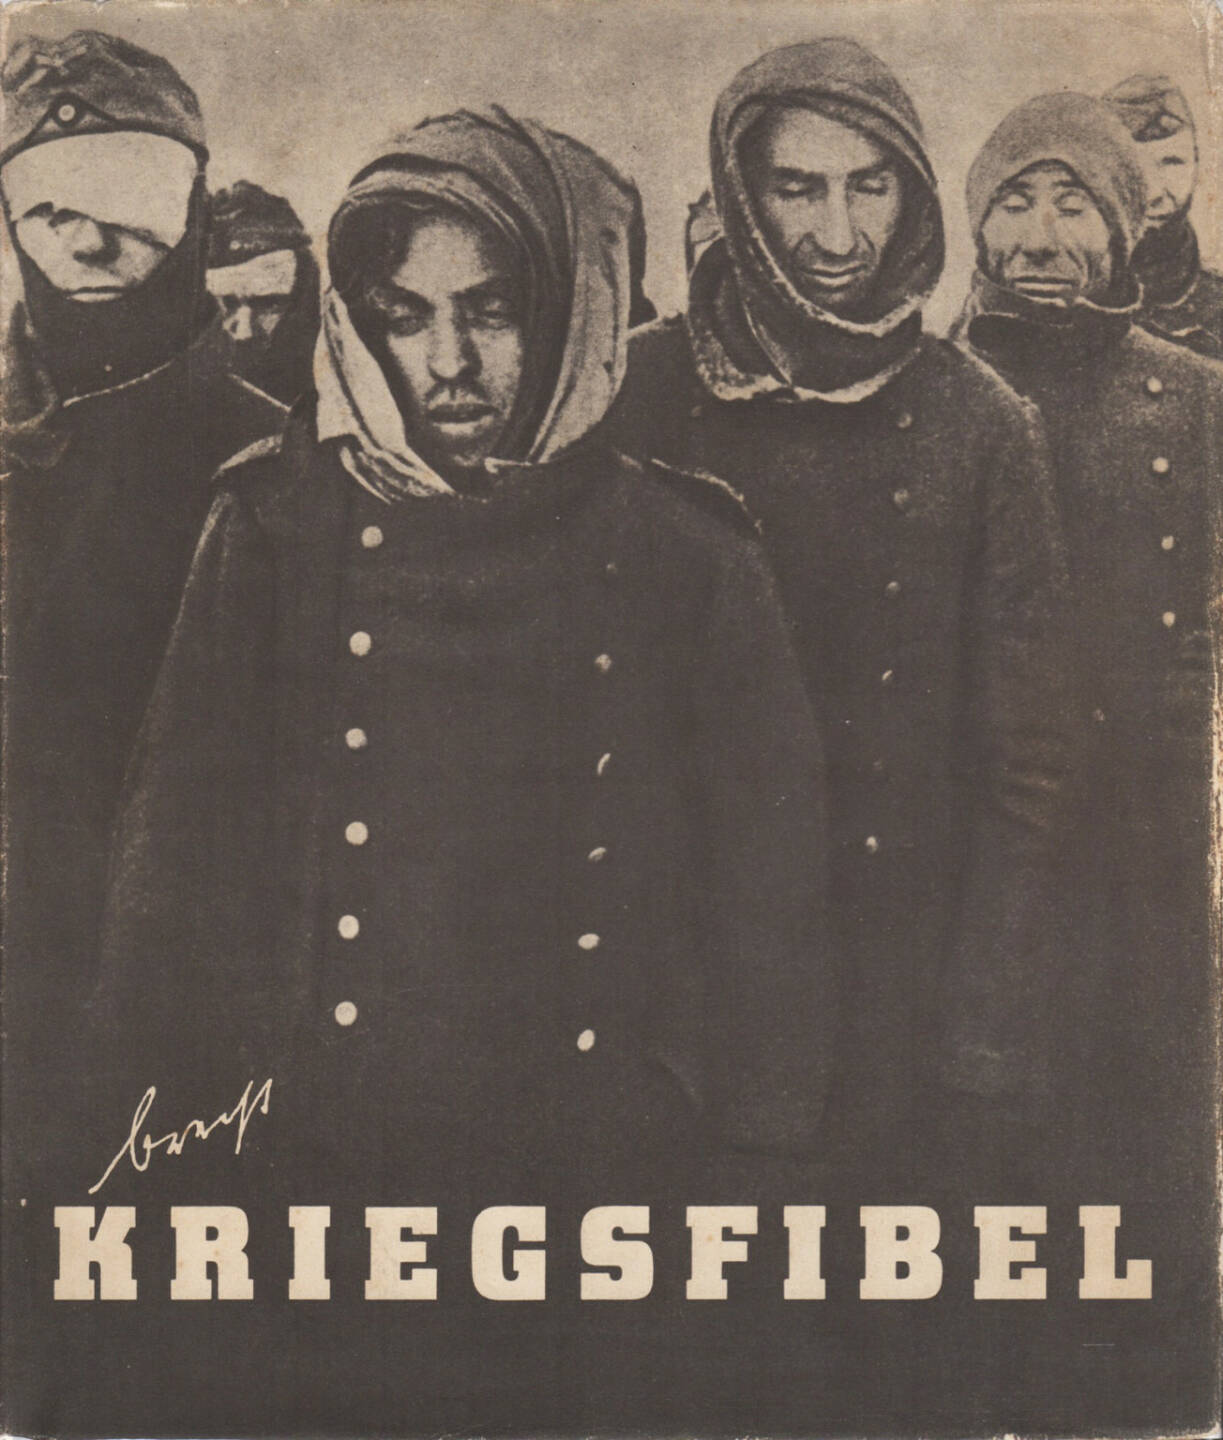 Bertolt Brecht - Kriegsfibel (1955, dustjacket) 150-250 Euro, http://josefchladek.com/book/bertolt_brecht_-_kriegsfibel